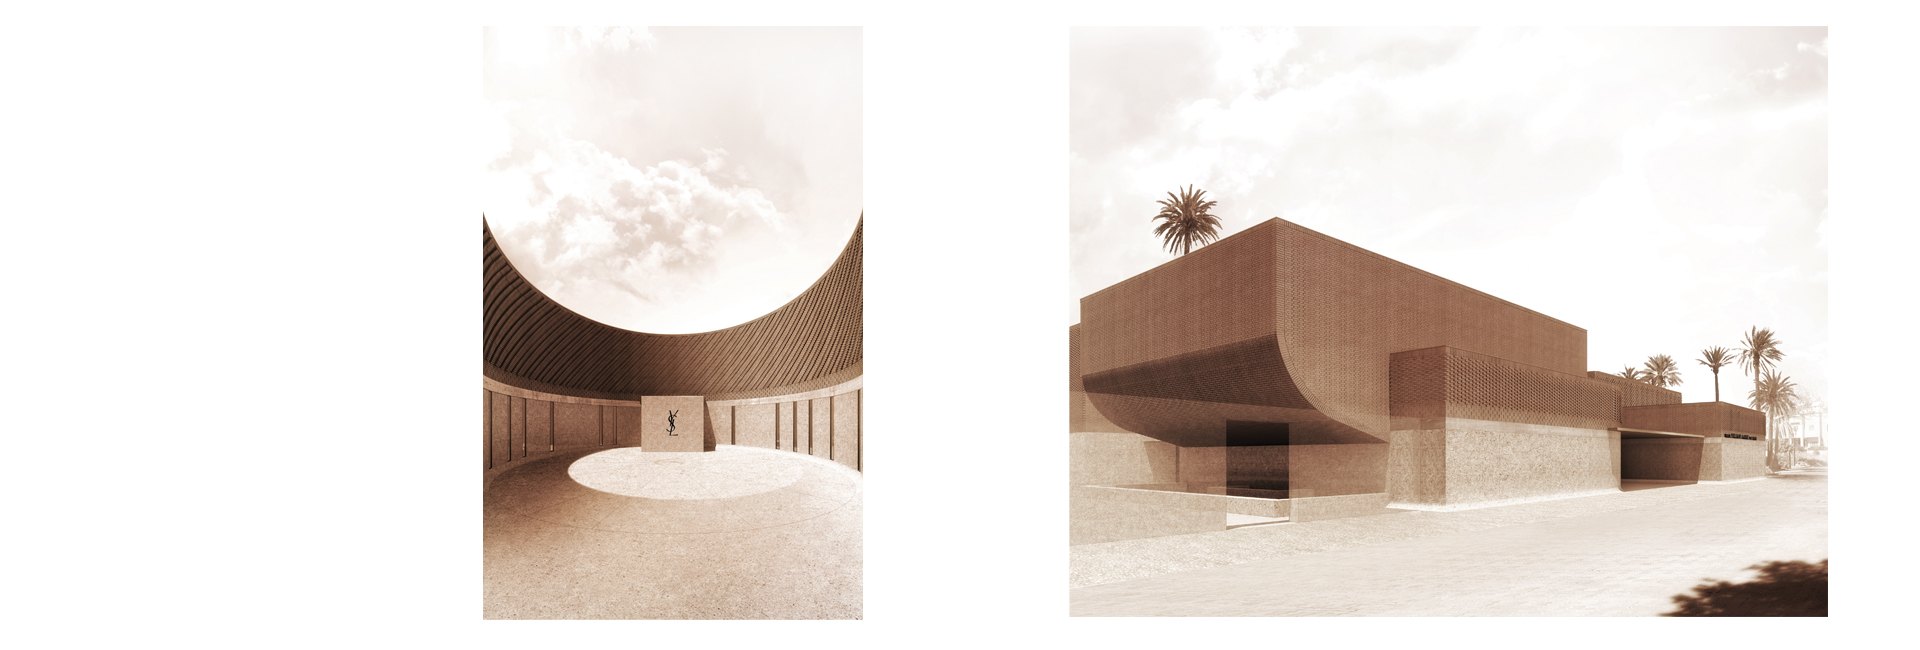 Директор Musée Yves Saint Laurent — о том, каким будет новый музей в Марракеше (фото 2)